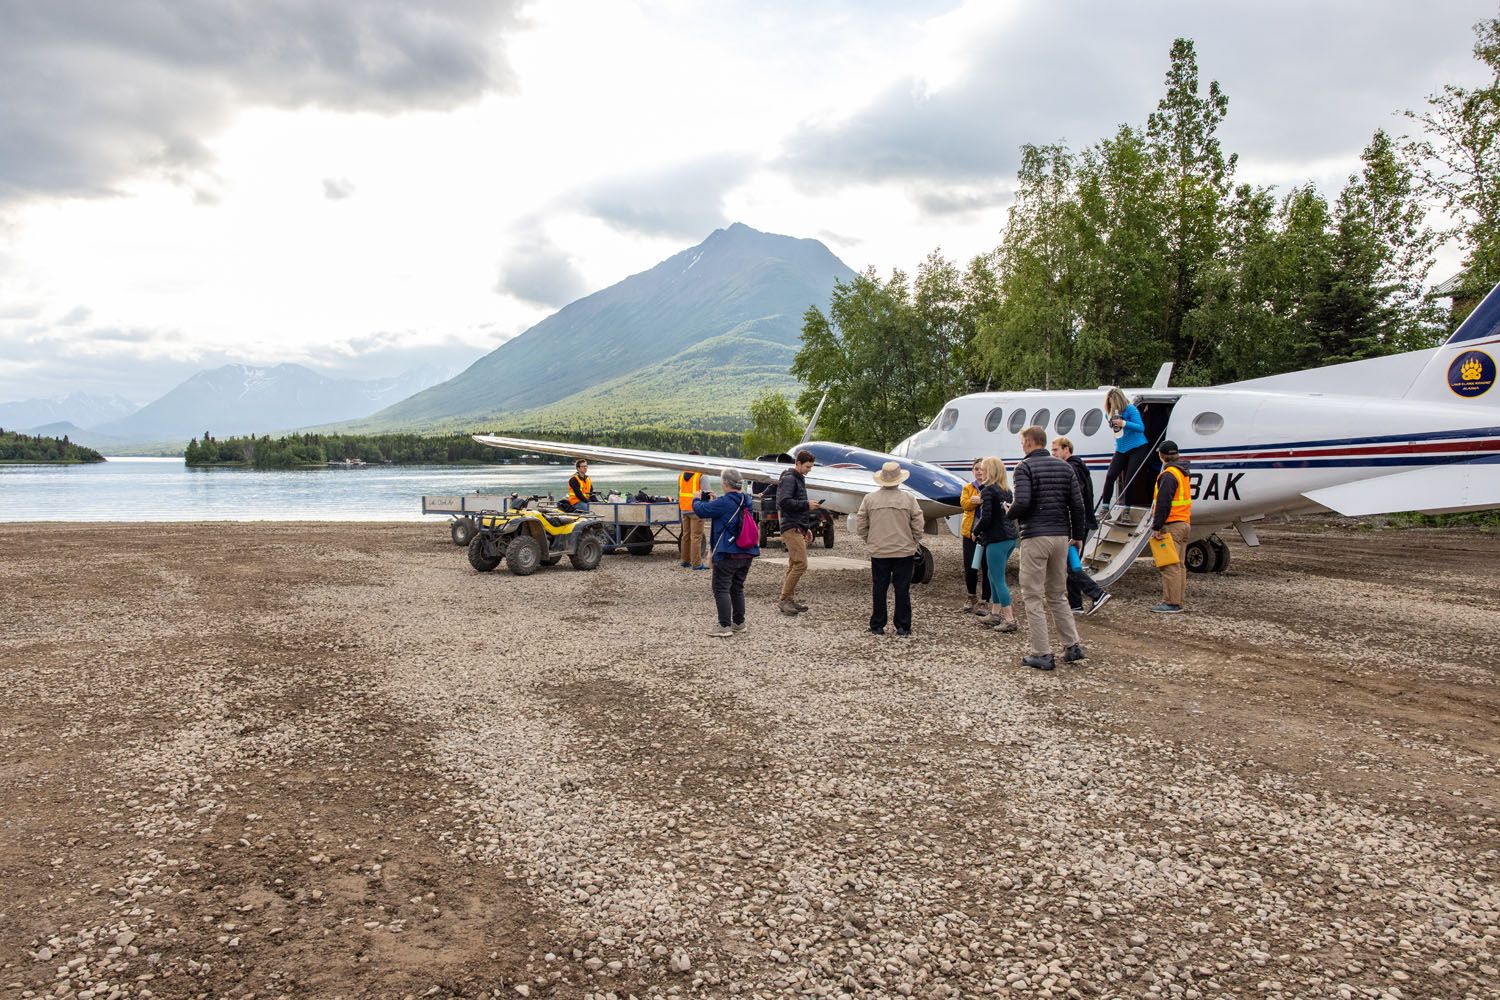 Arriving in Port Alsworth Alaska